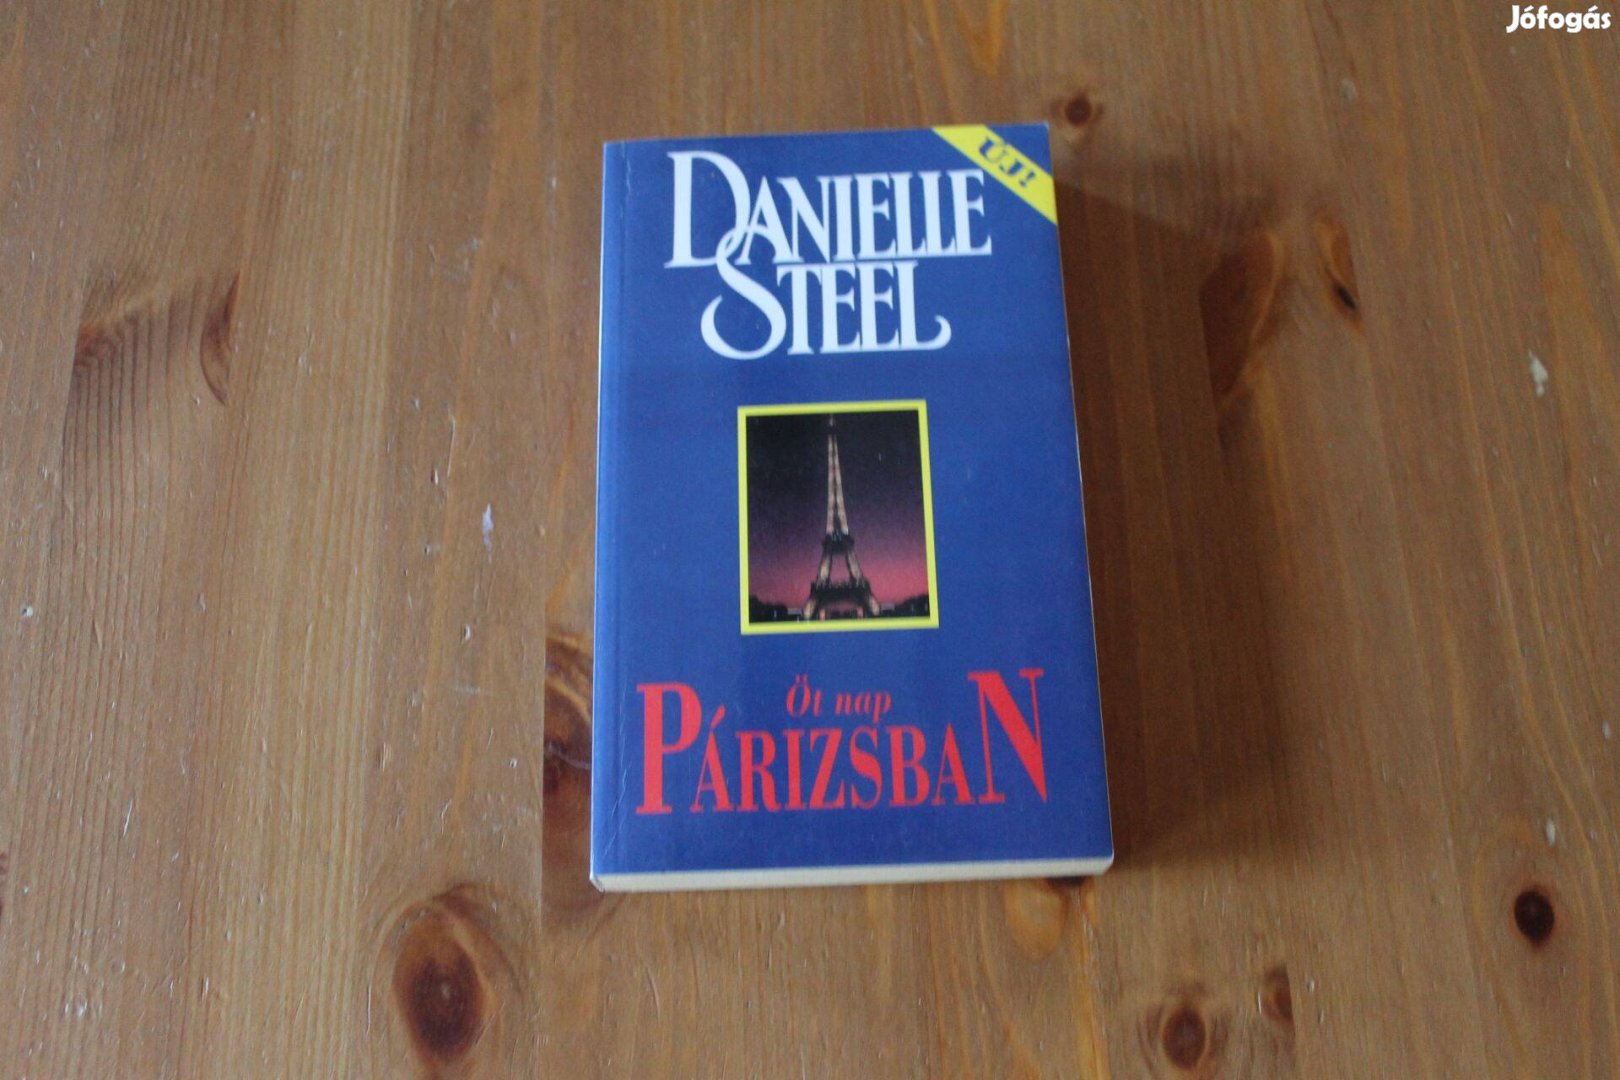 Danielle Steel - Öt nap Párizsban